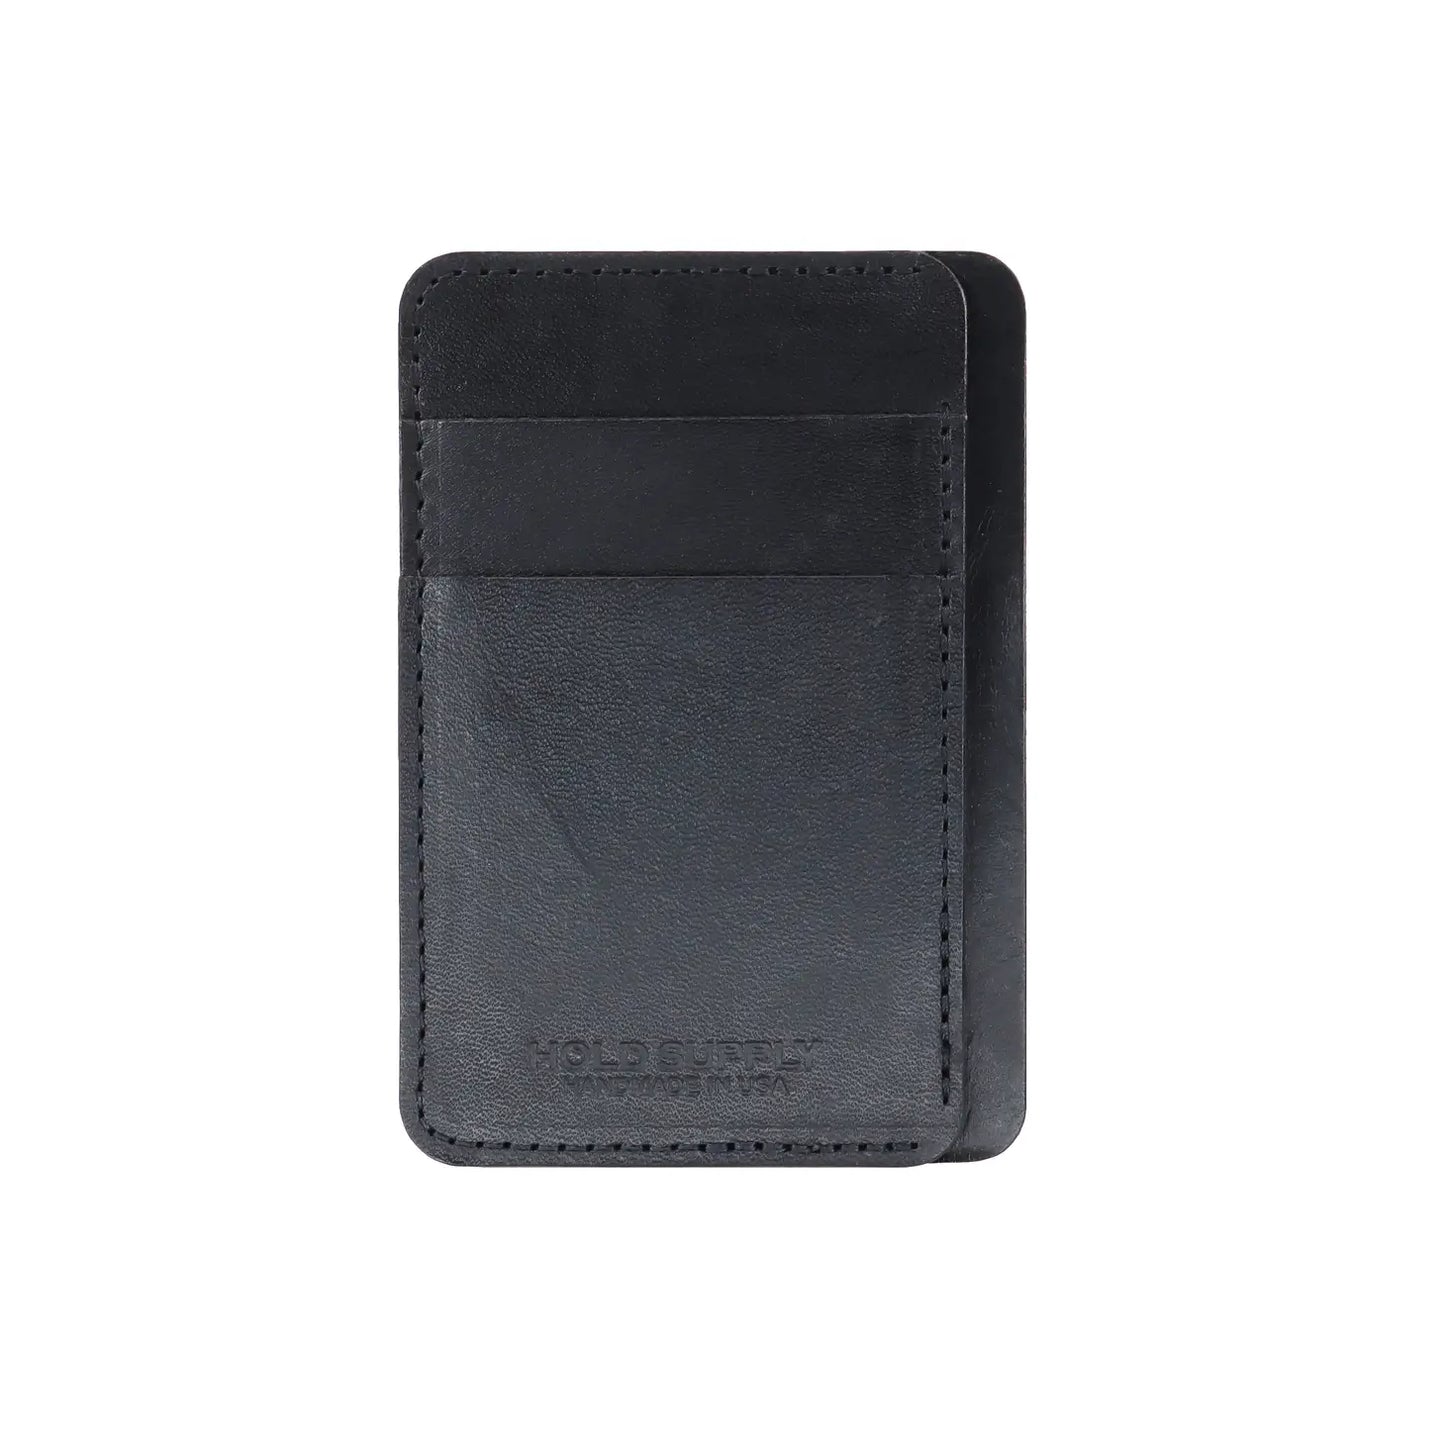 Cardholder Leather Wallet 7 POCKET (Black, Brown)